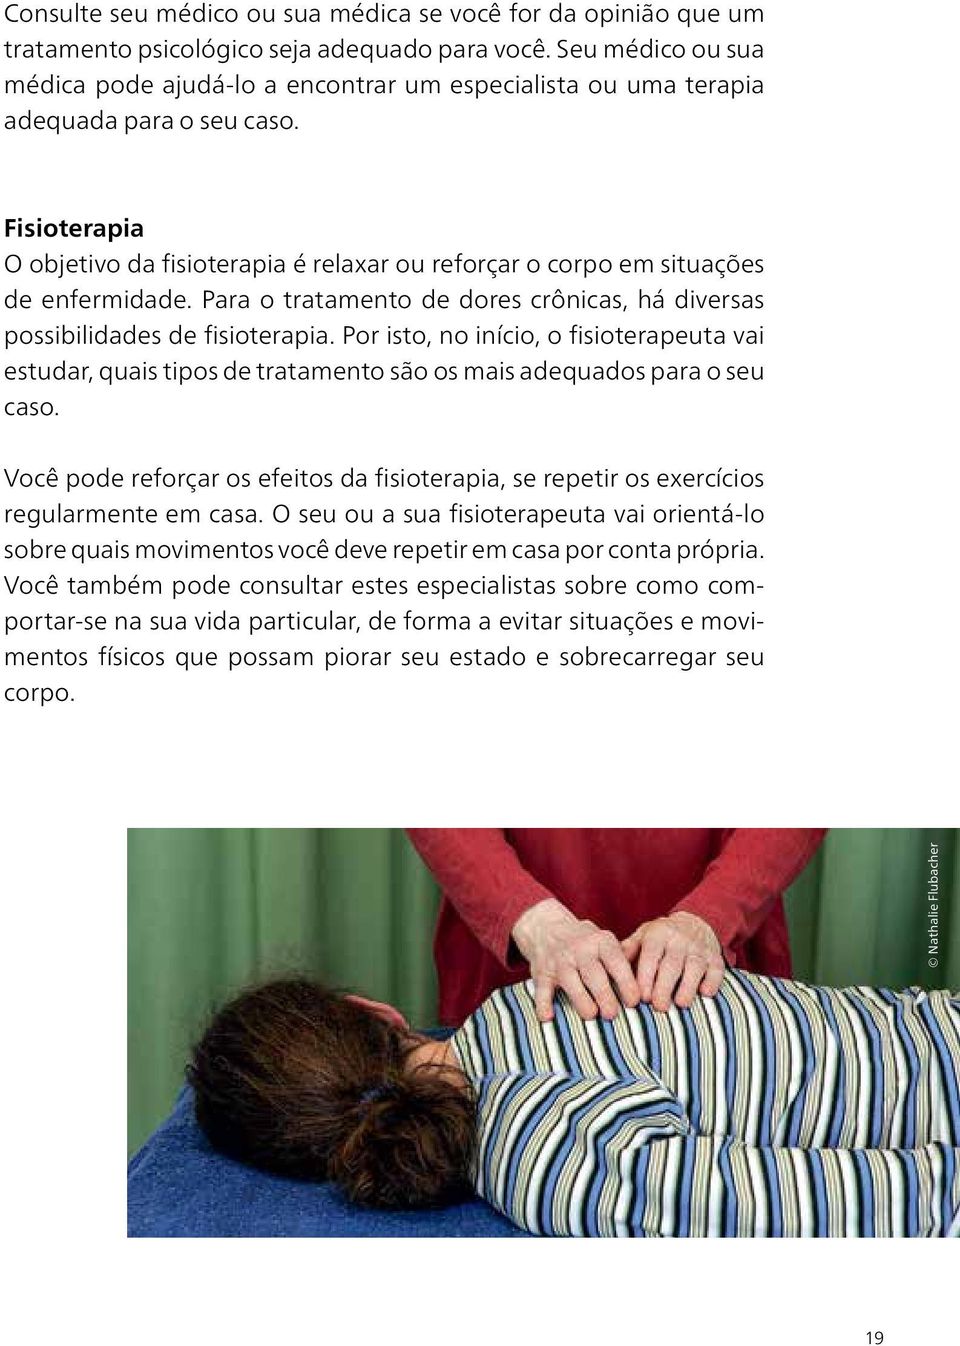 Fisioterapia O objetivo da fisioterapia é relaxar ou reforçar o corpo em situações de enfermidade. Para o tratamento de dores crônicas, há diversas possibilidades de fisioterapia.